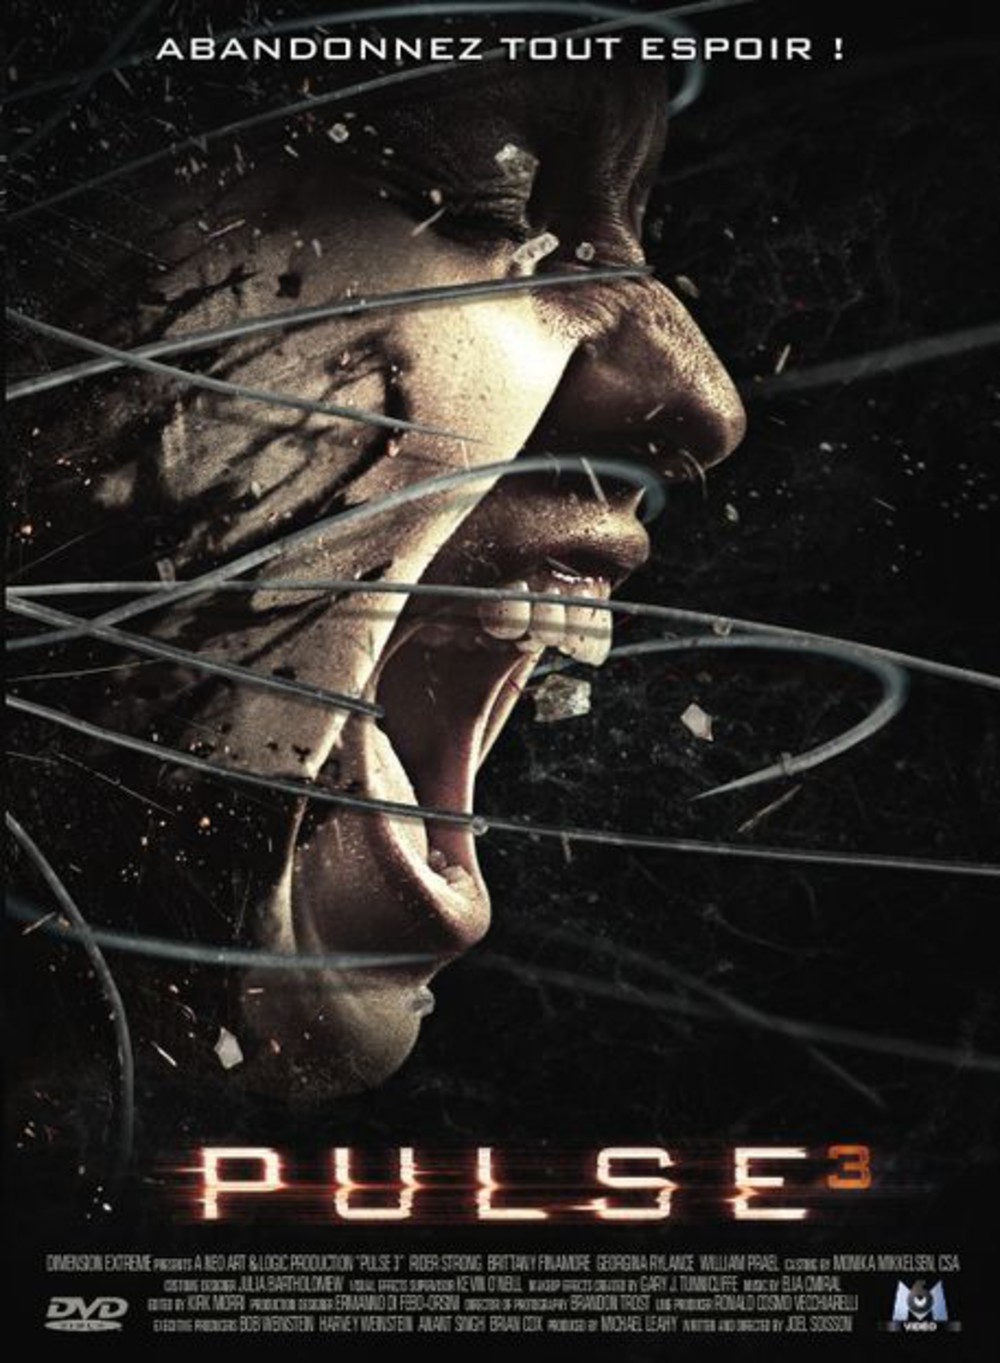 affiche du film Pulse 3